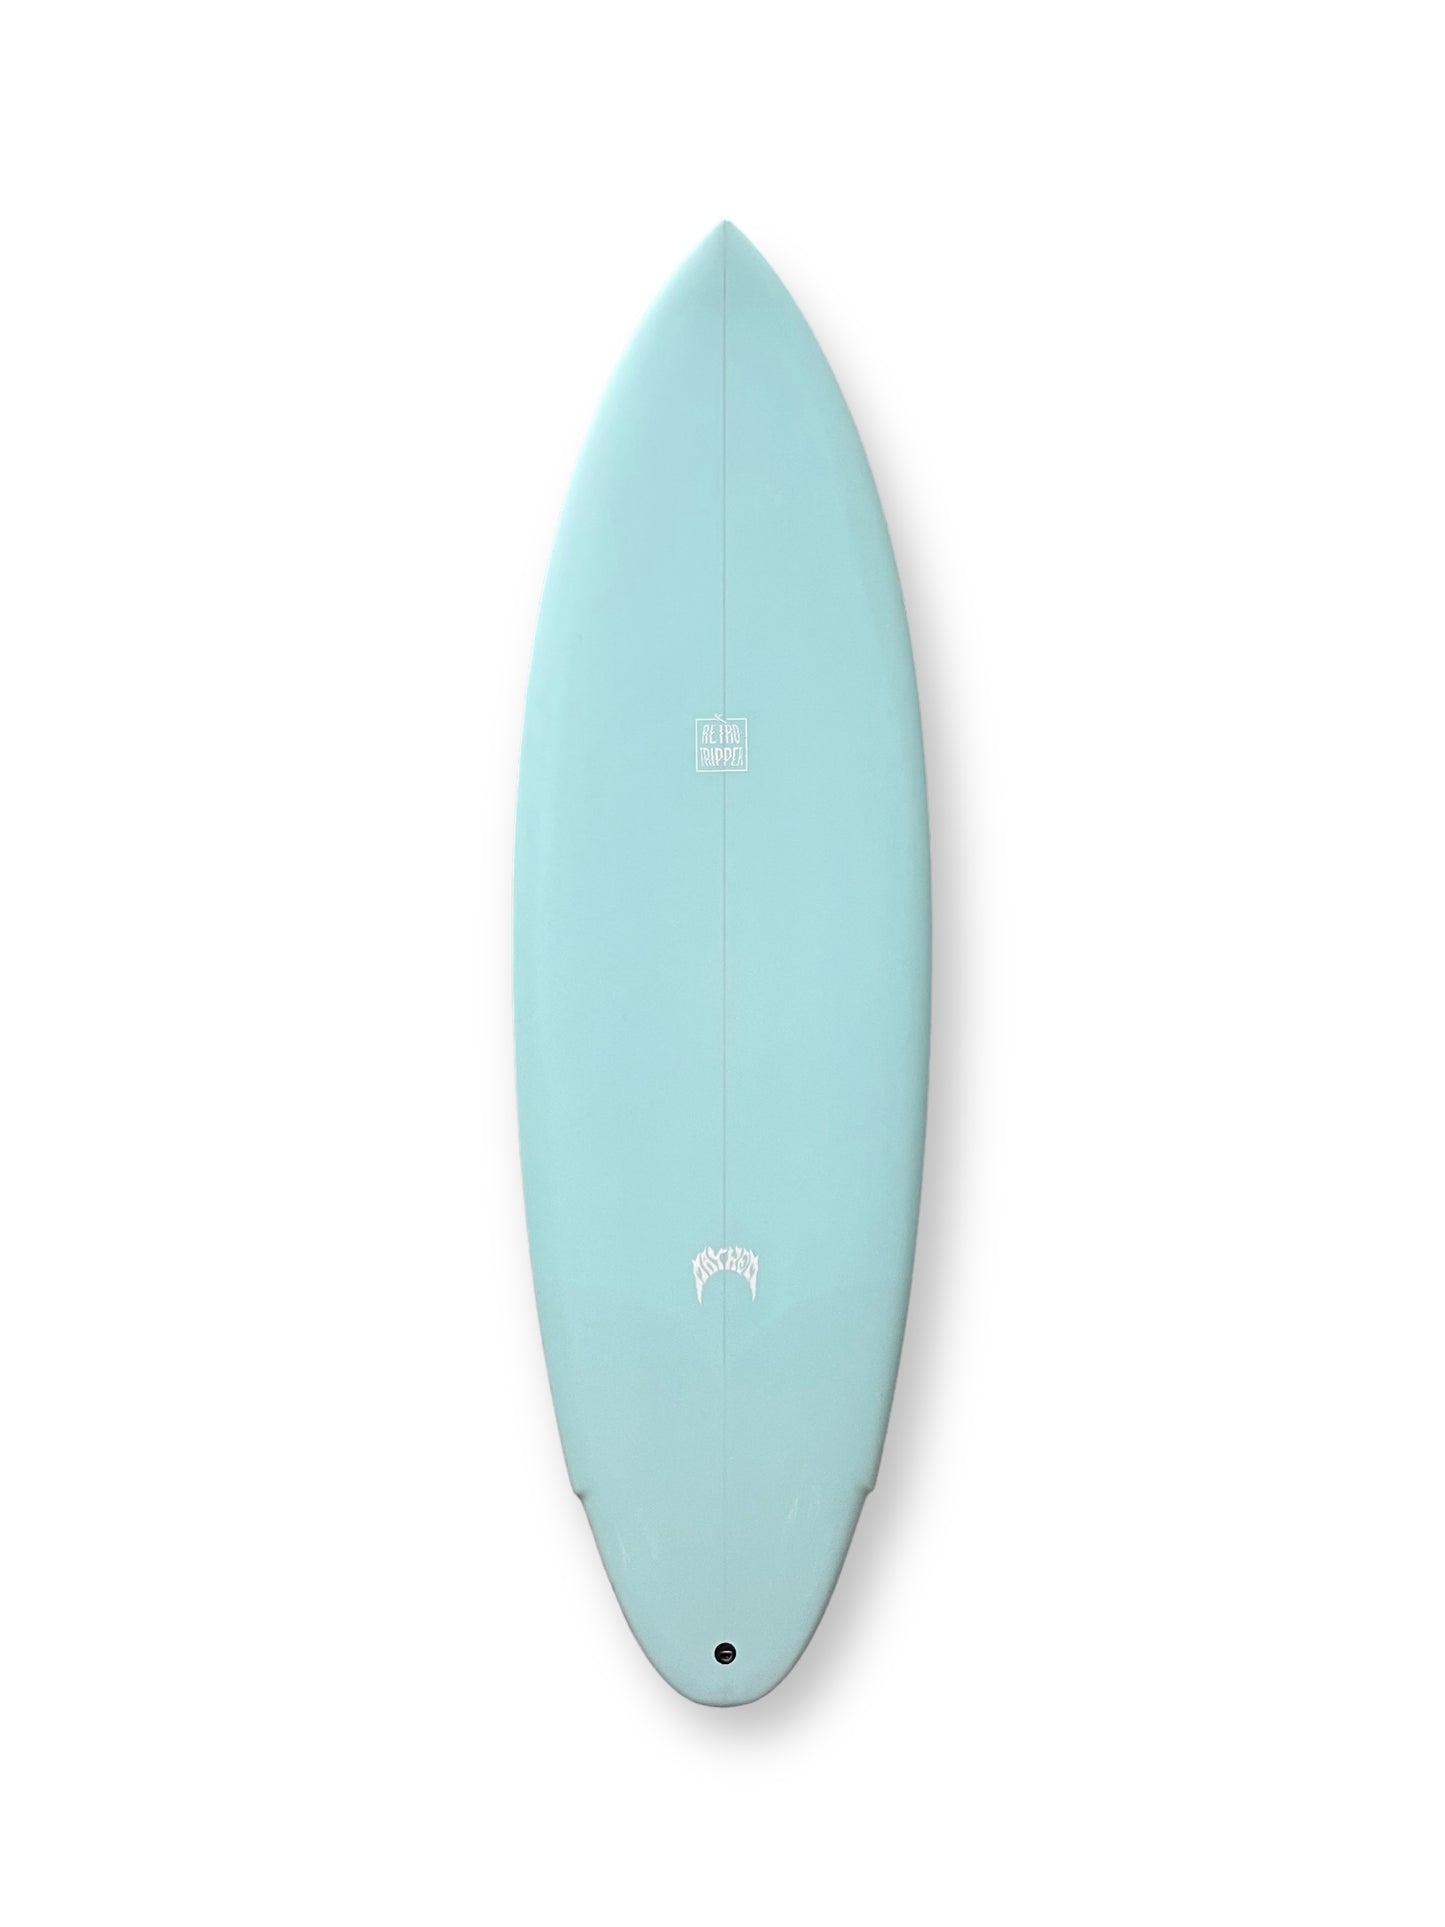 LOST MAYHEM RETRO RIPPER 5'6" SURFBOARD